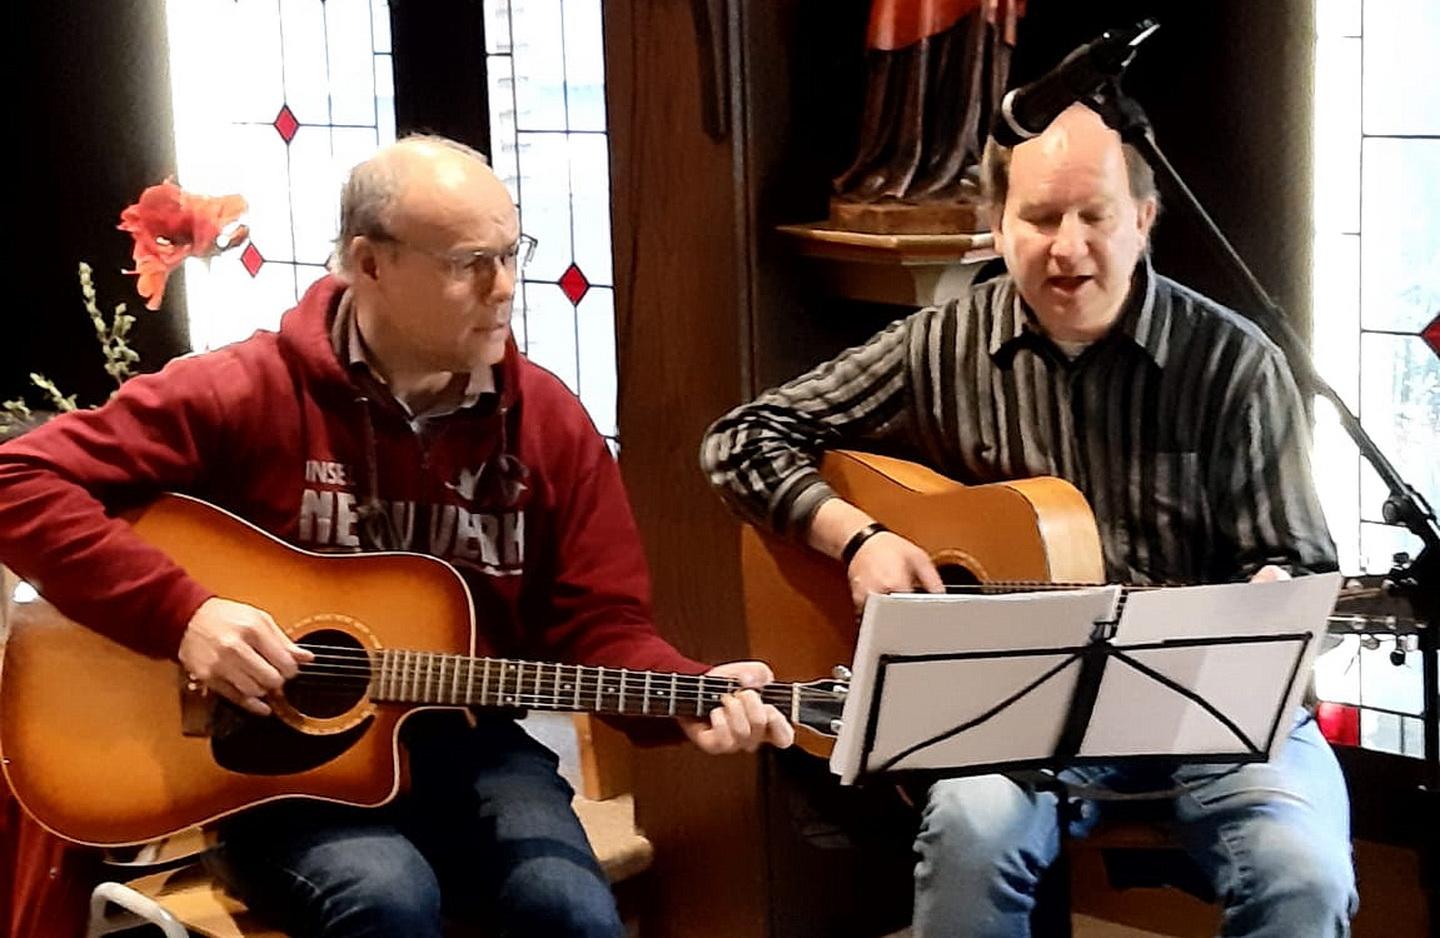 Das Gitarrenduo „With Four hands“ mit Guido Jackson-Wilms (r.) und Dr. Norbert Feinendegen gab in der Hauskapelle des Ordo Communionis in Christo in Mechernich ein Konzert mit nachdenklichen Songs.